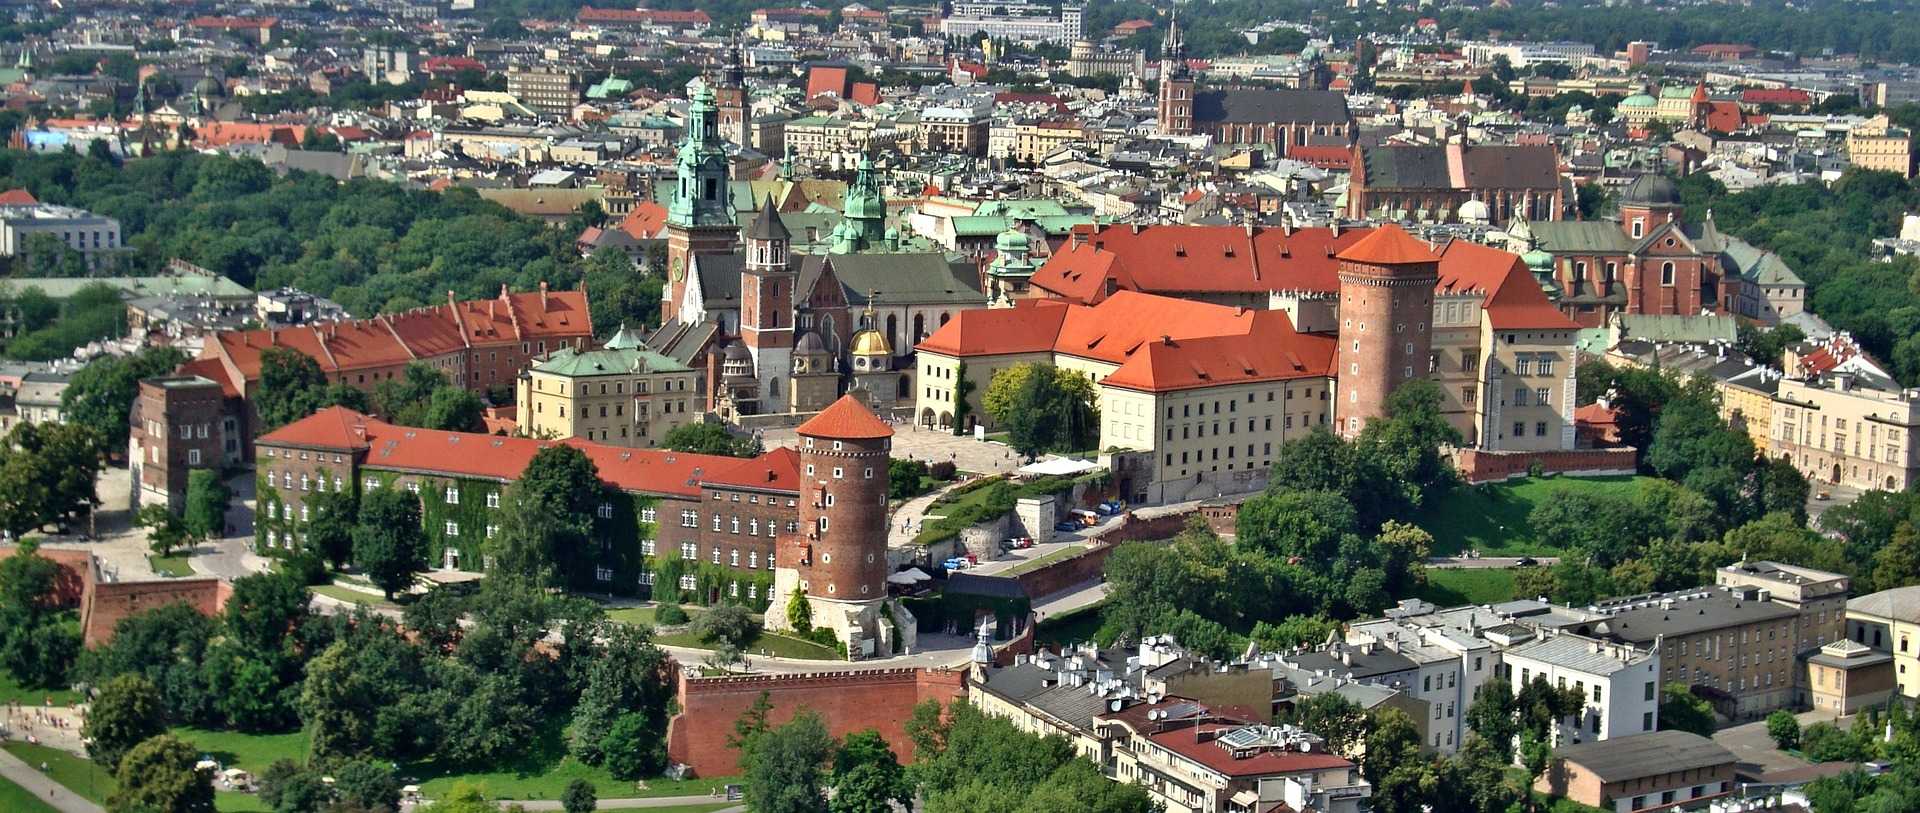 טירת ואוול קרקוב - המדריך לביקור בטירה הידועה של קרקוב!